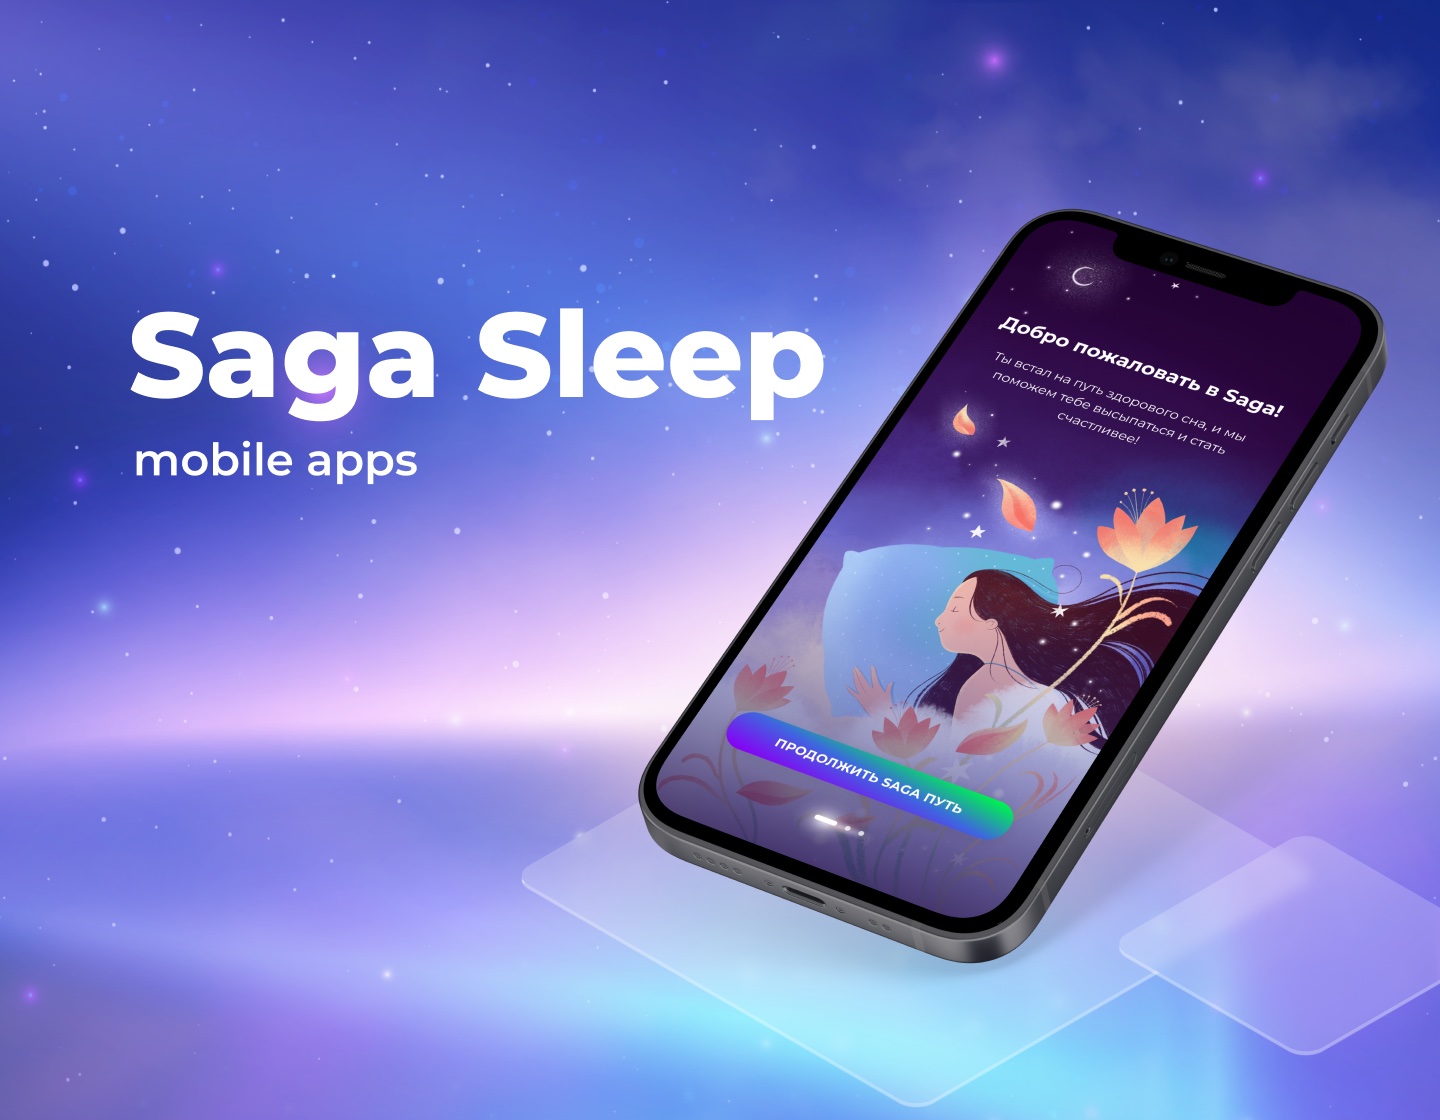 Saga - mobile app for quality sleep